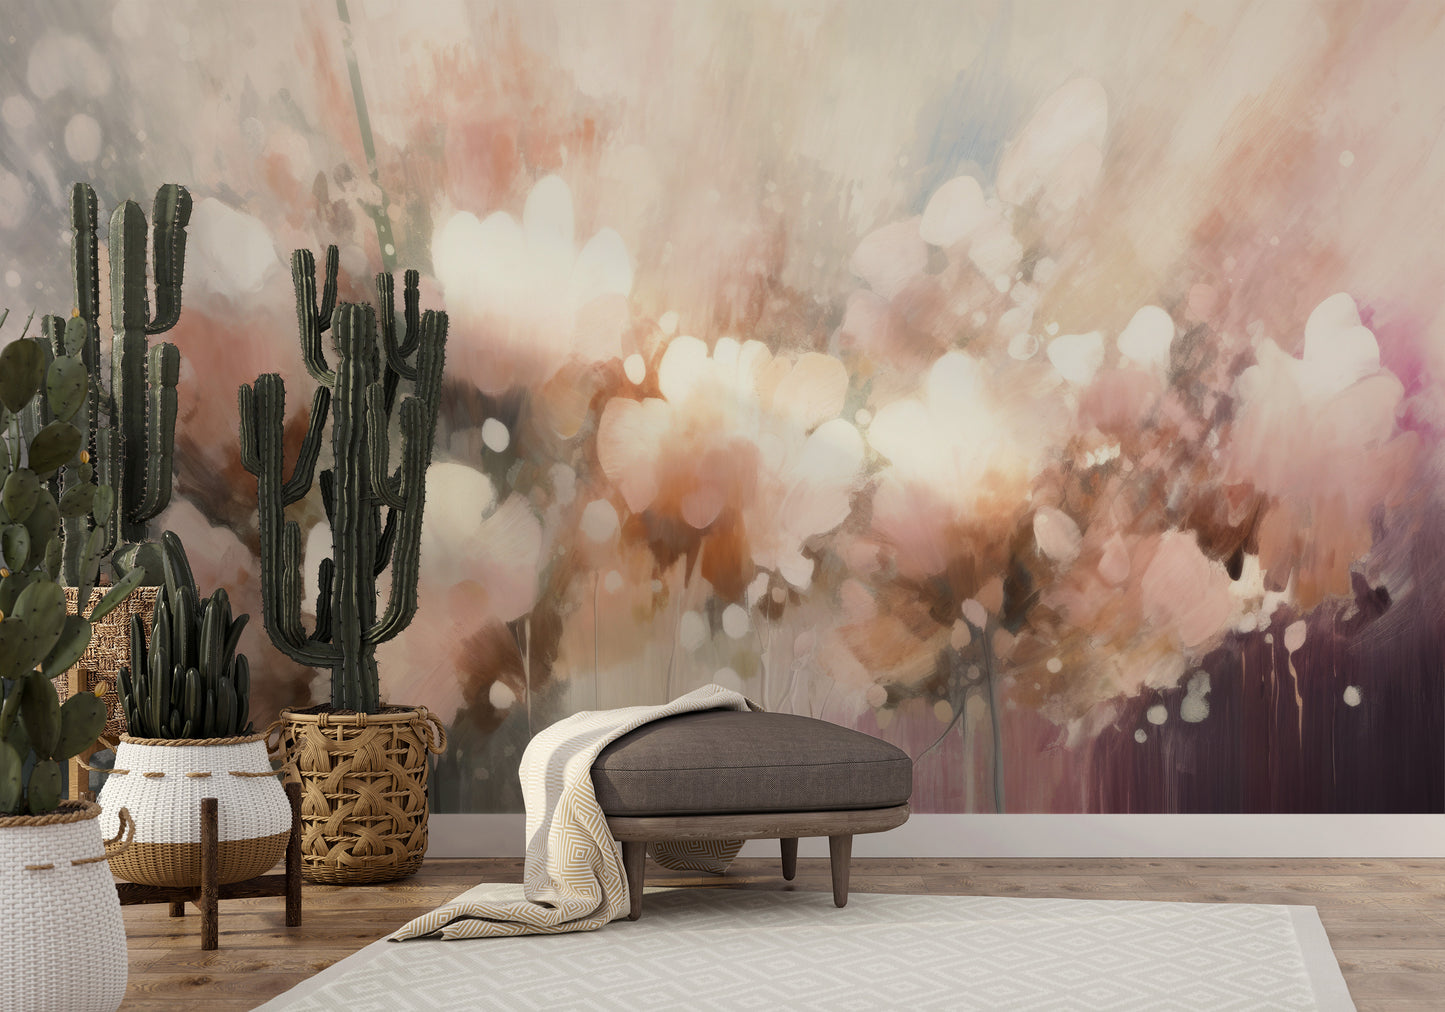 Wzór fototapety malowanej o nazwie Pastel Petal Dream pokazanej w aranżacji wnętrza.